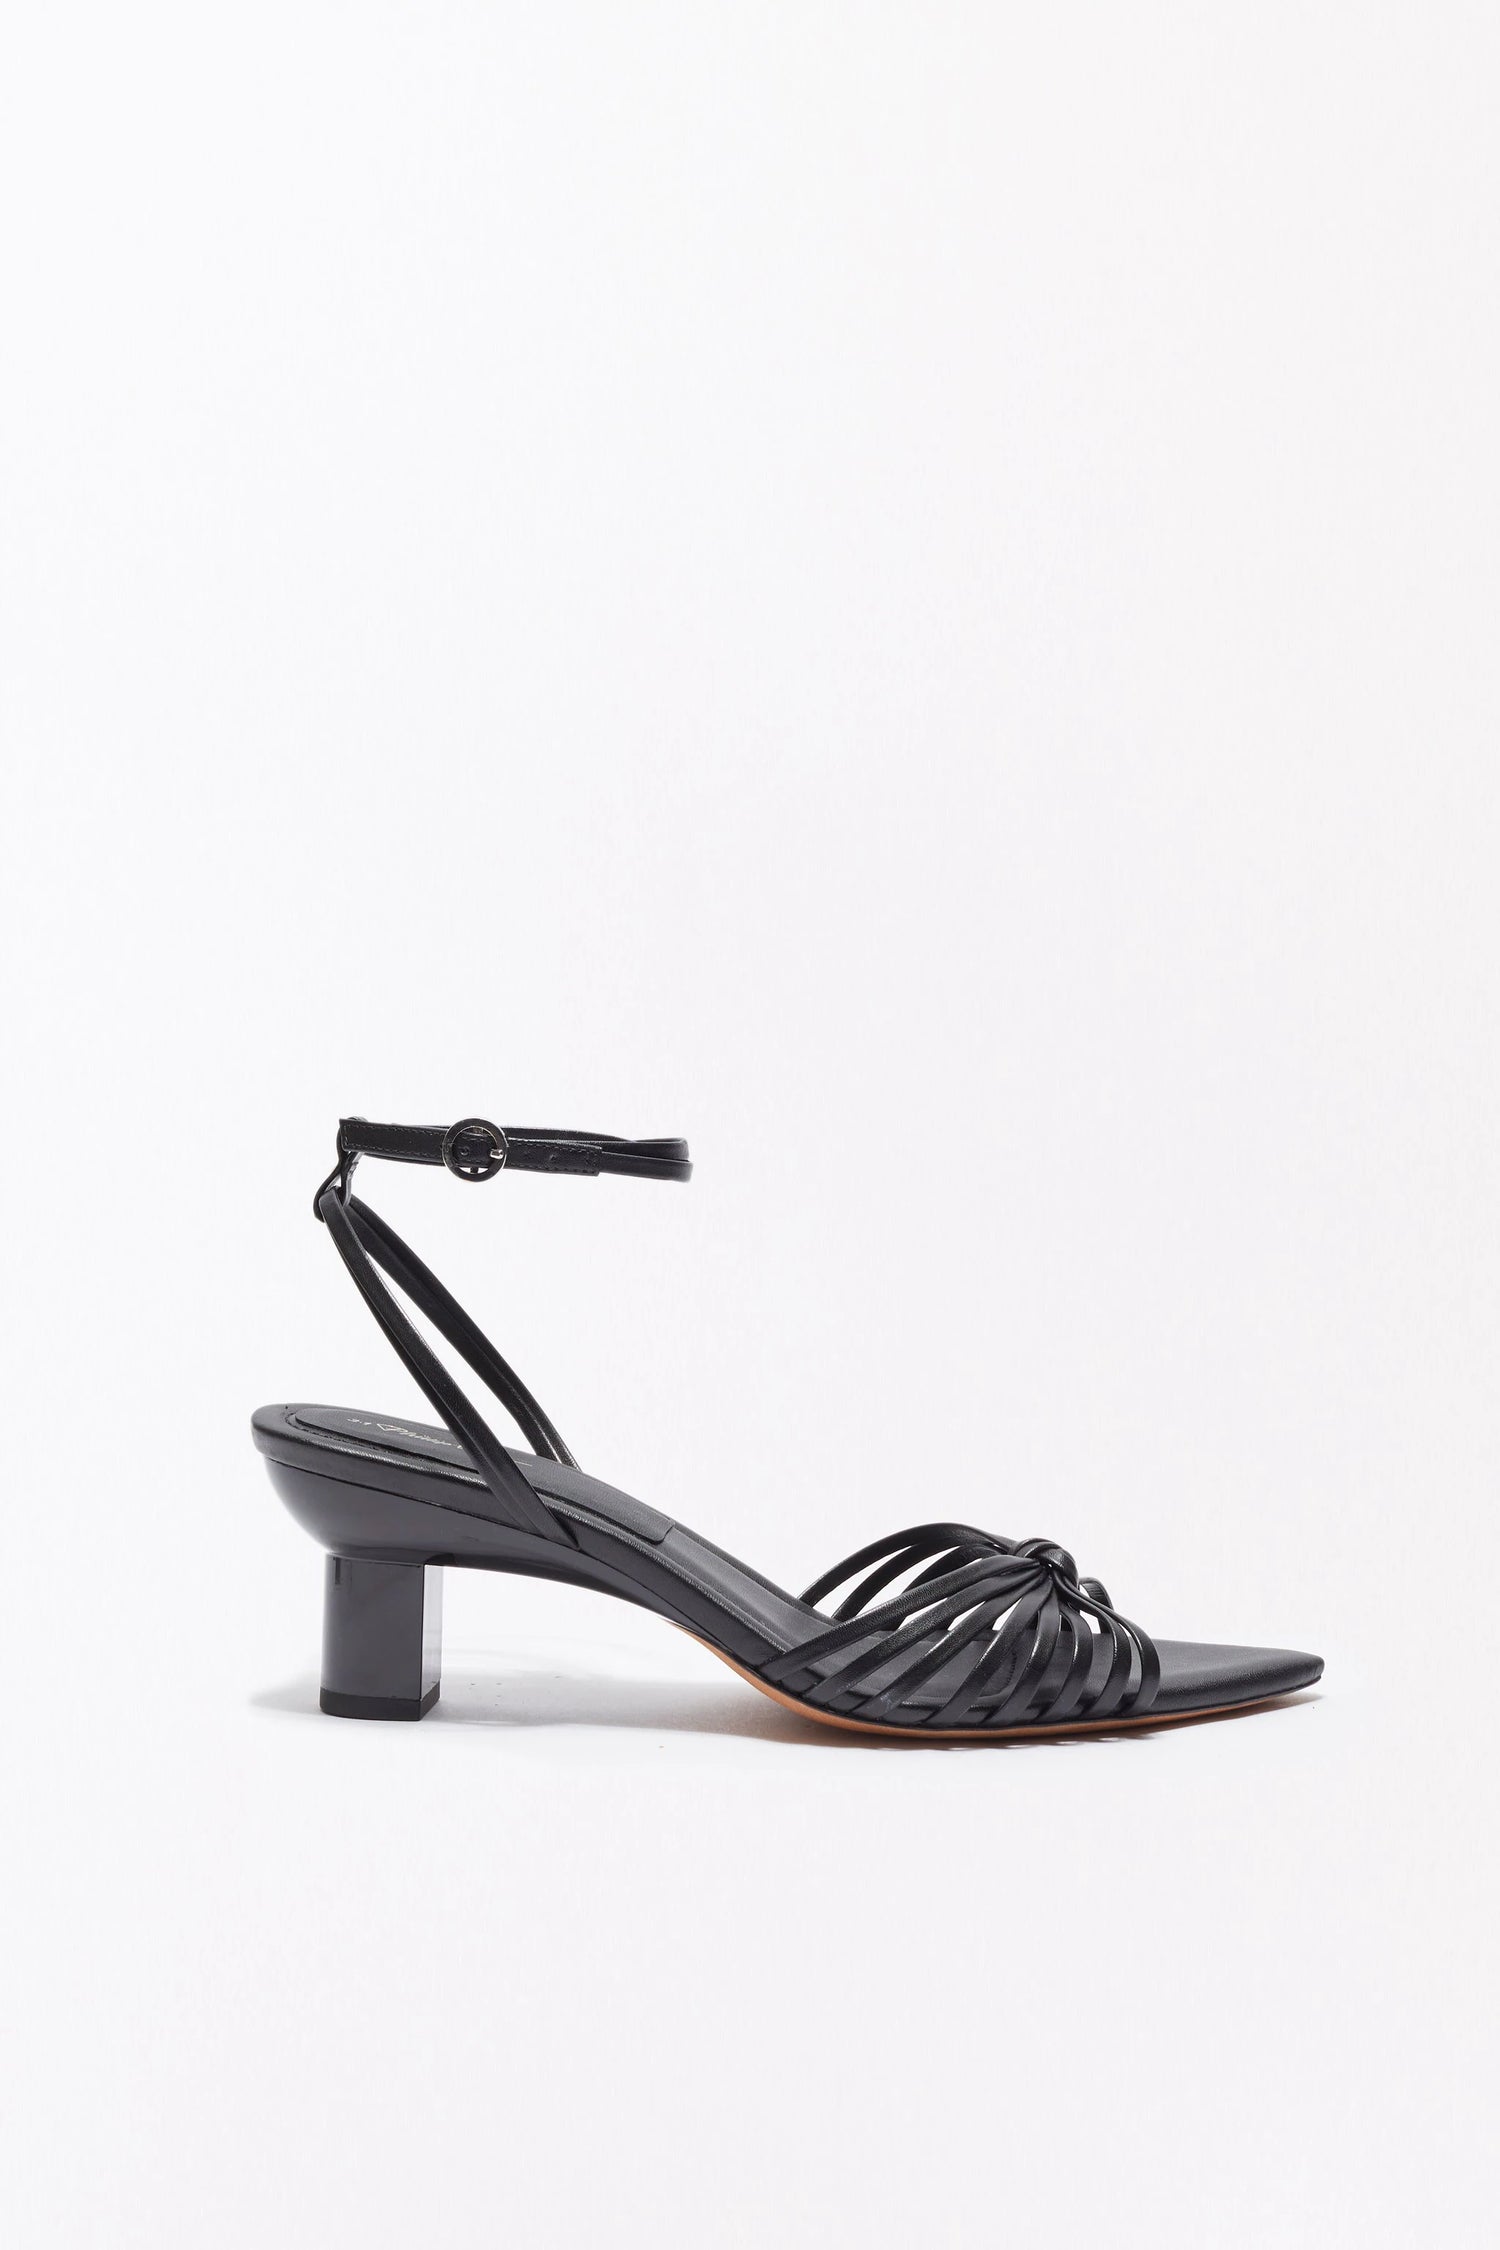 Verona sandals, black